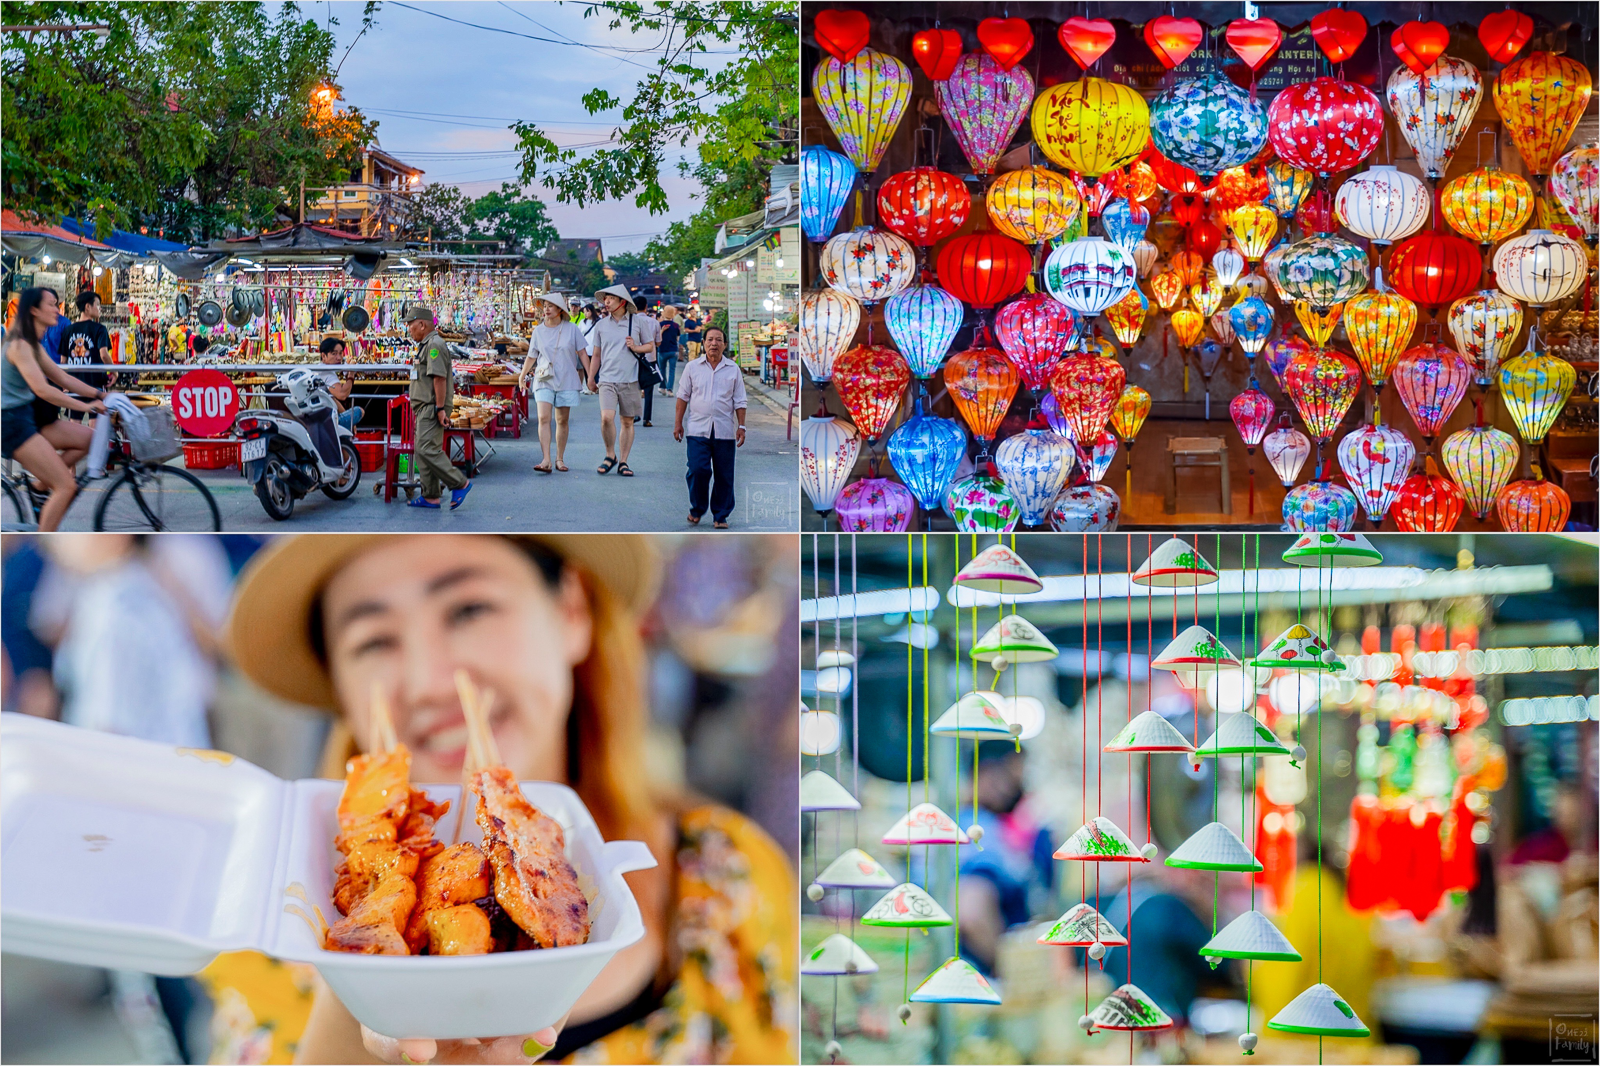 ฮอยอัน 13 พิกัด สองวันหนึ่งคืนเที่ยวเวียตนามเองได้,Hoi An, Night Market,Basket Boat,Faifo Market,Japanese Bridge,อยากรู้จักโลกกว้าง ,on22family